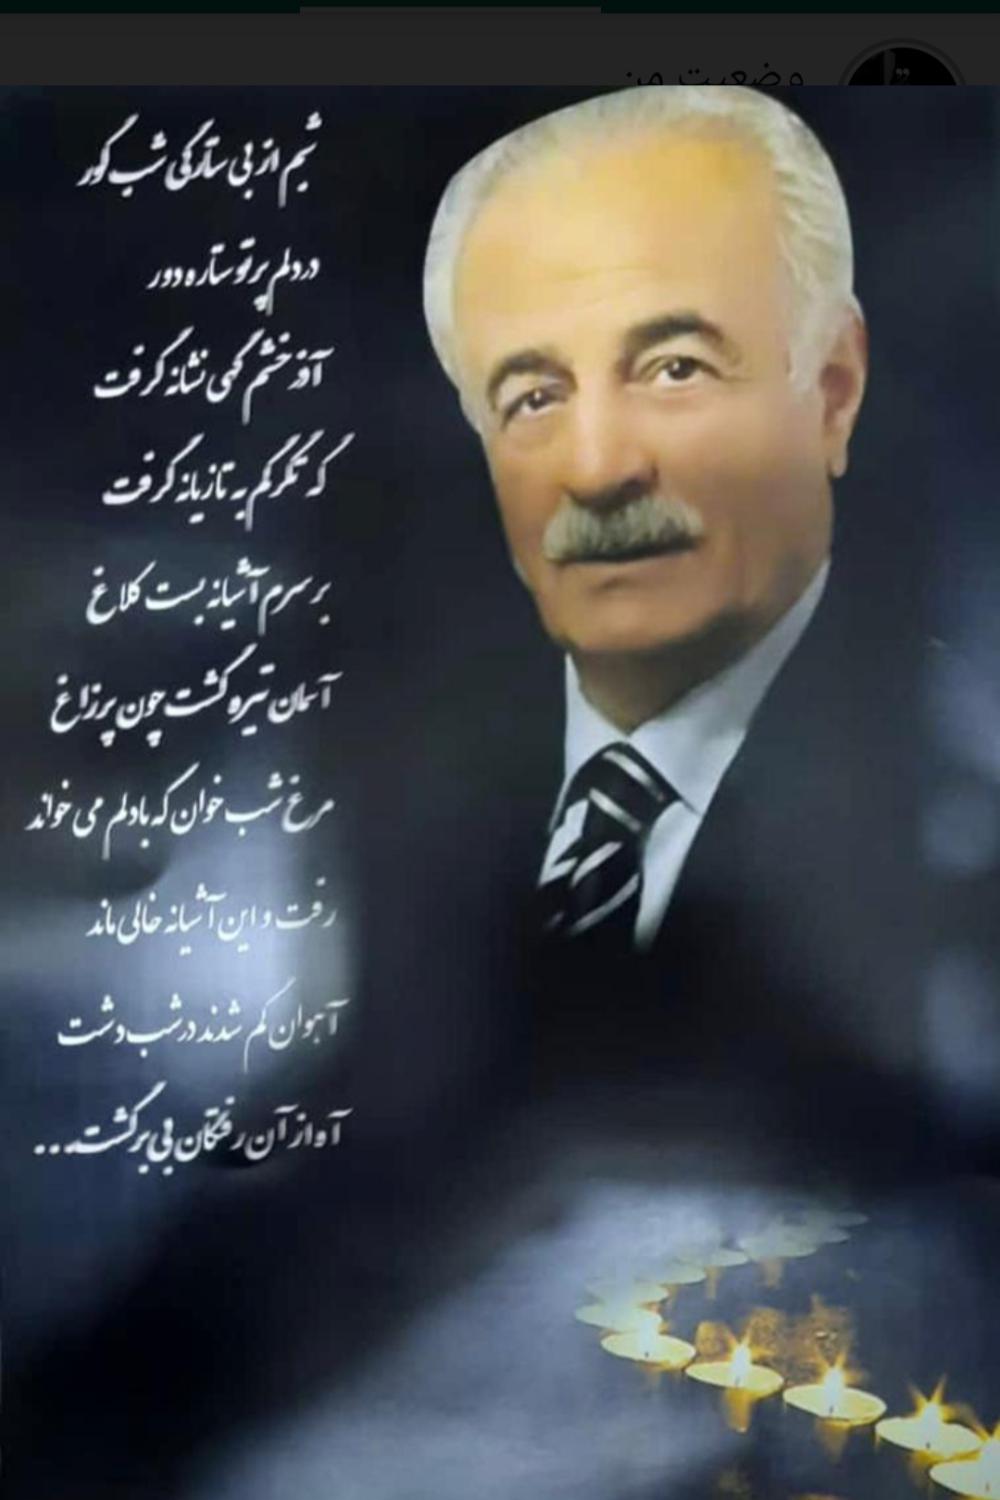 یادبود شادروان سید رضا (امیر) پوروخشوری